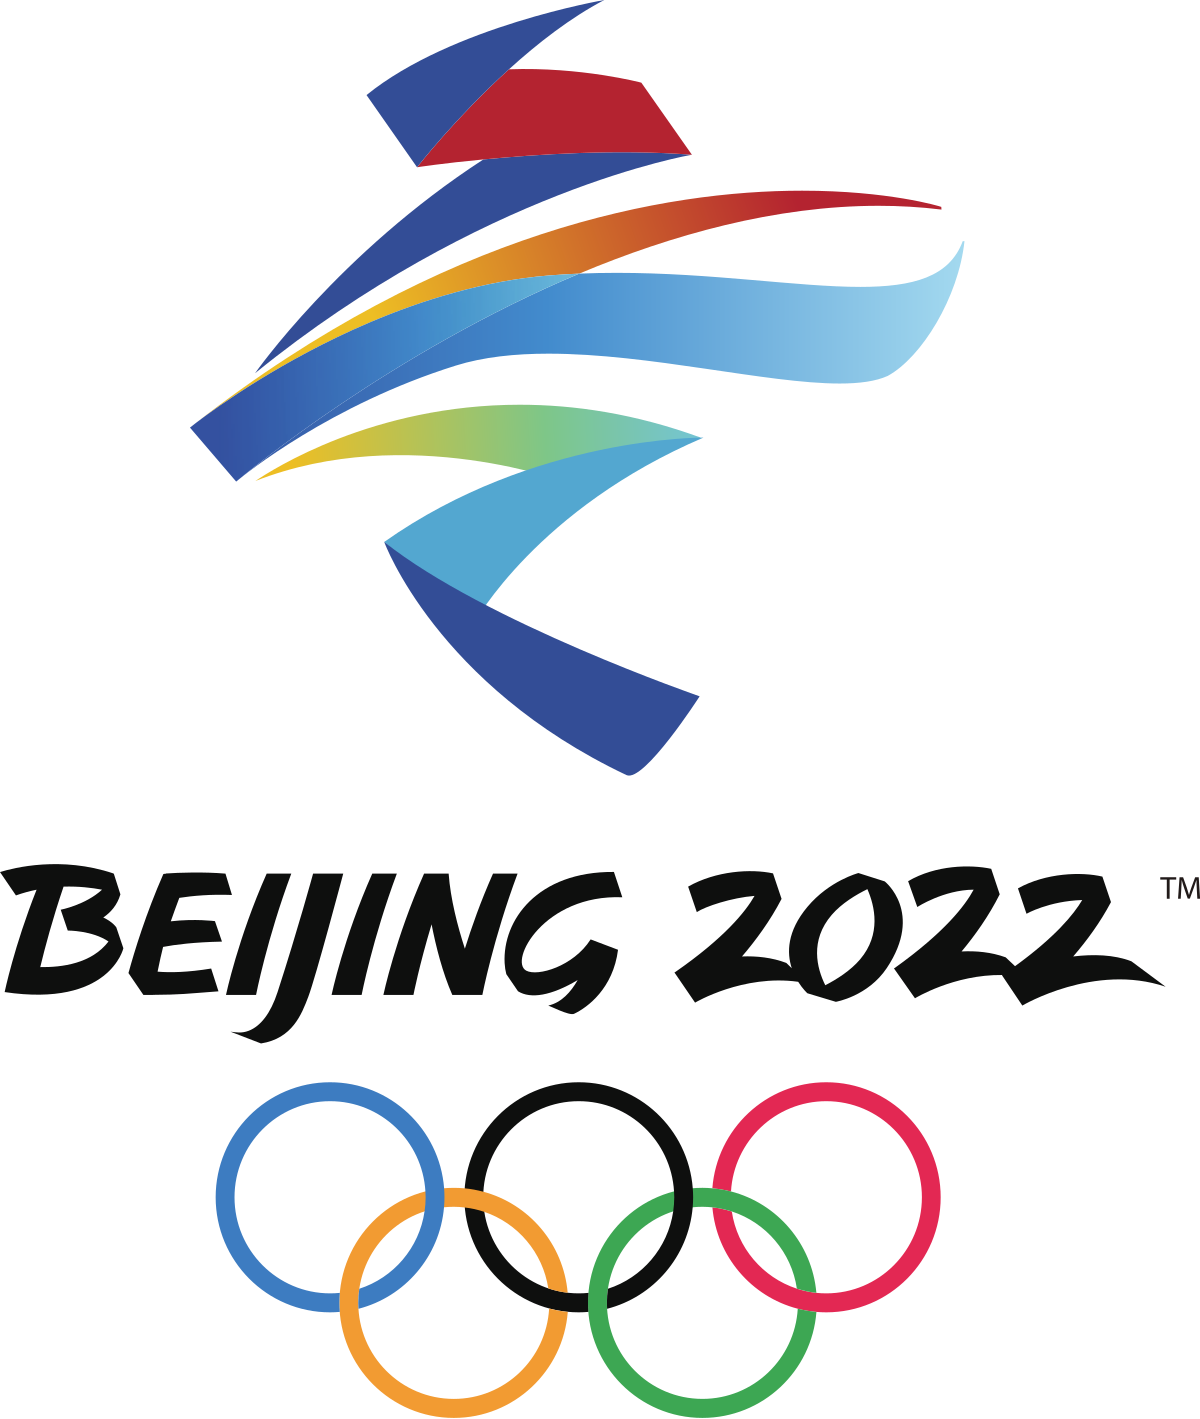 2022年北京冬季奥运会会标